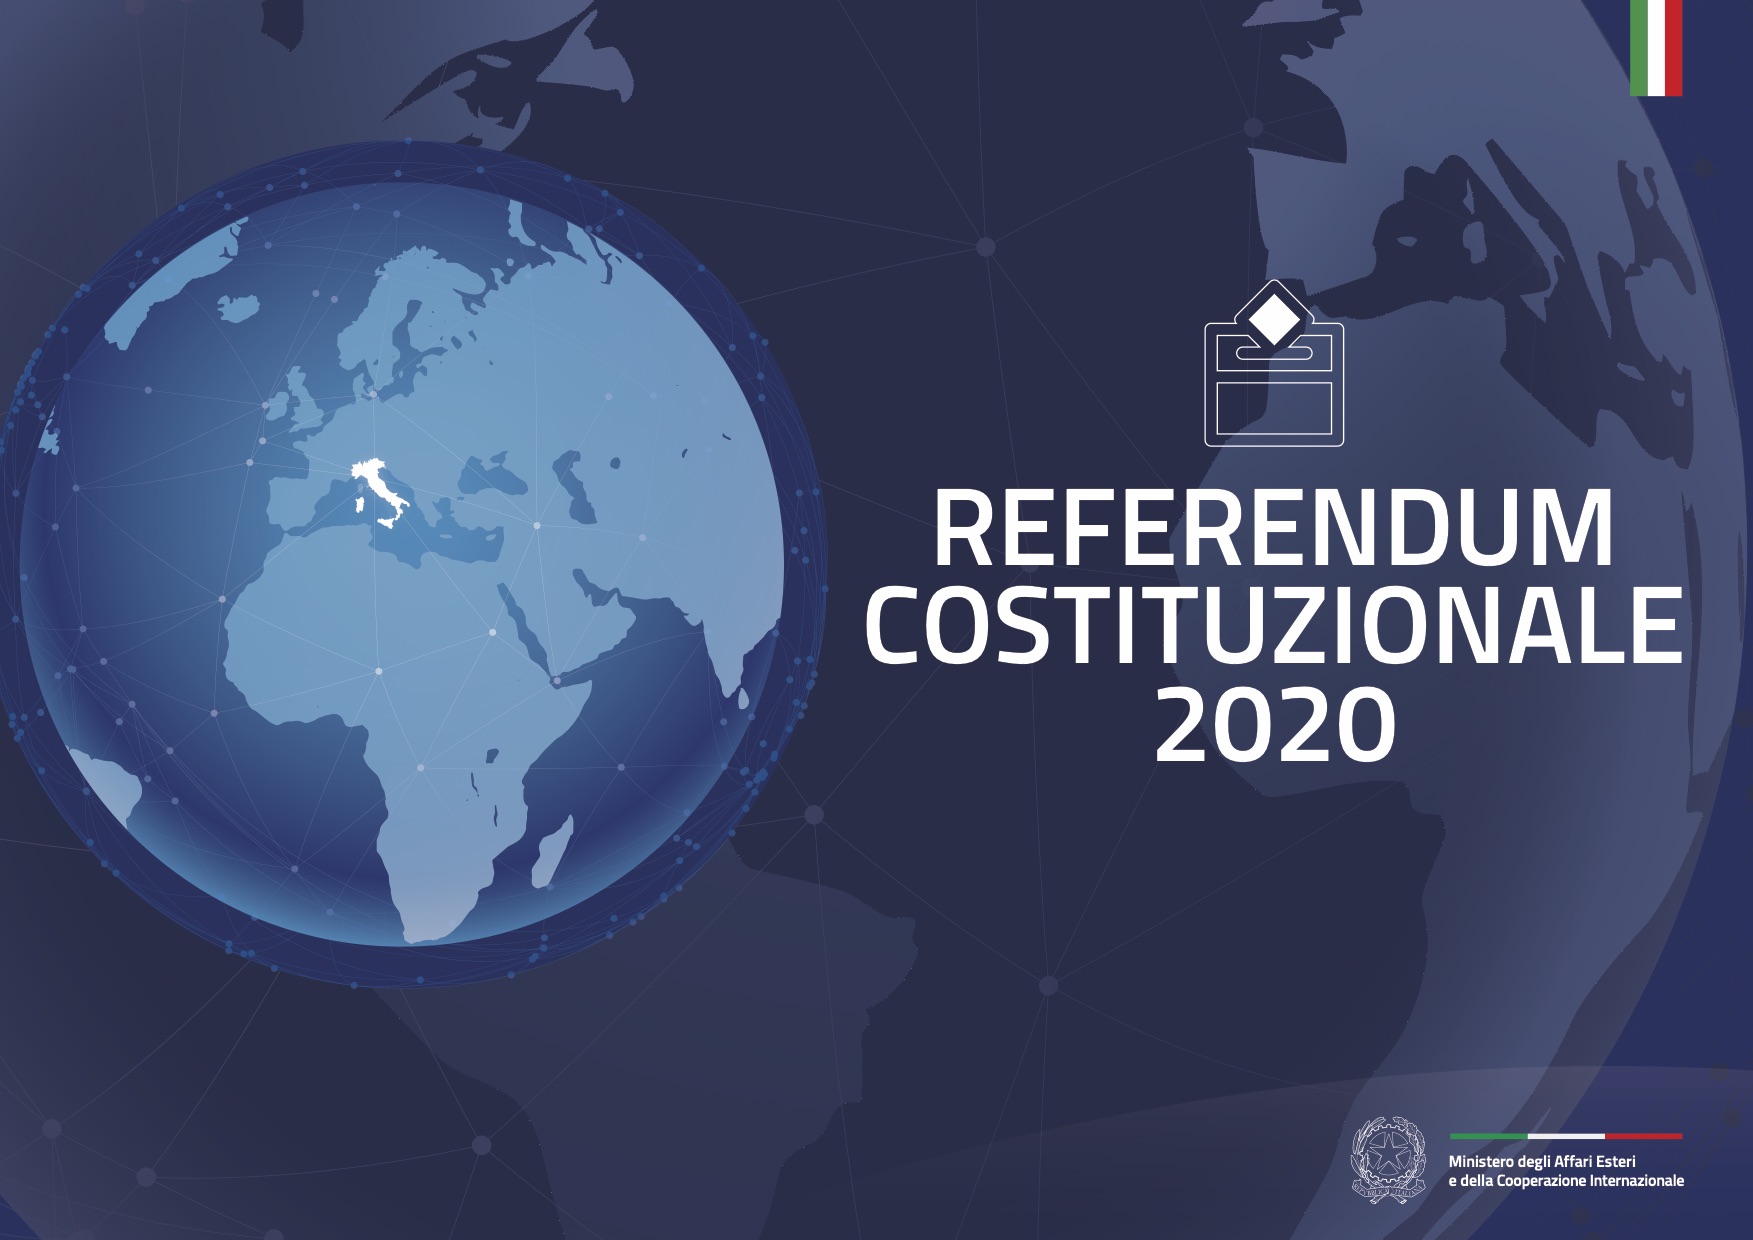 Referendum Costituzionale, si vota a settembre